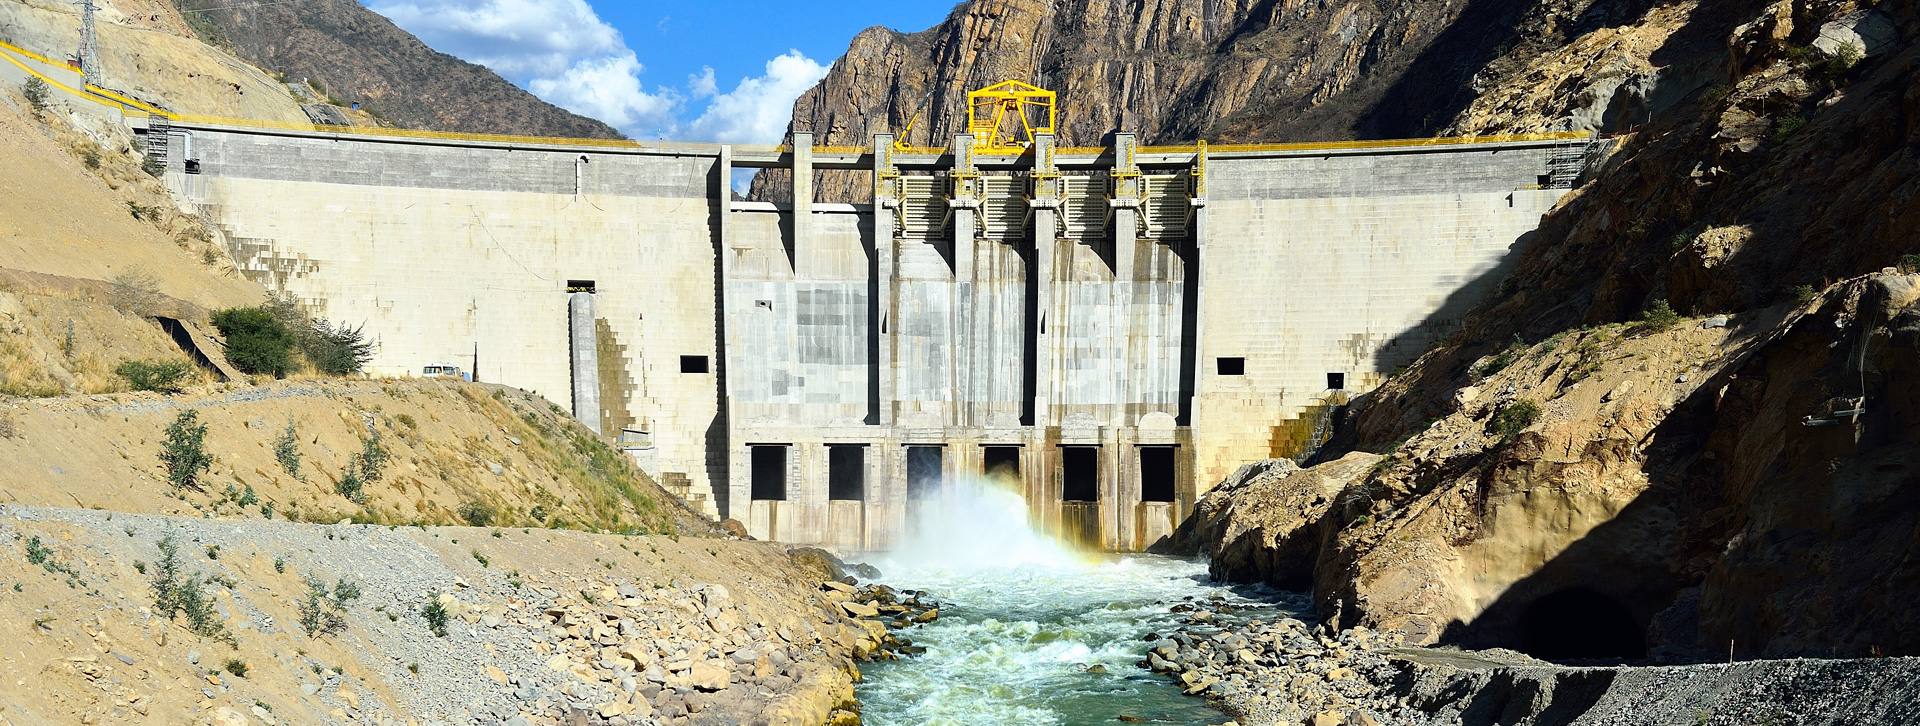 Vial y Vives - DSD, Cerro del Águila es una central hidroeléctrica de 557 MW de potencia en Huancavelica, Perú